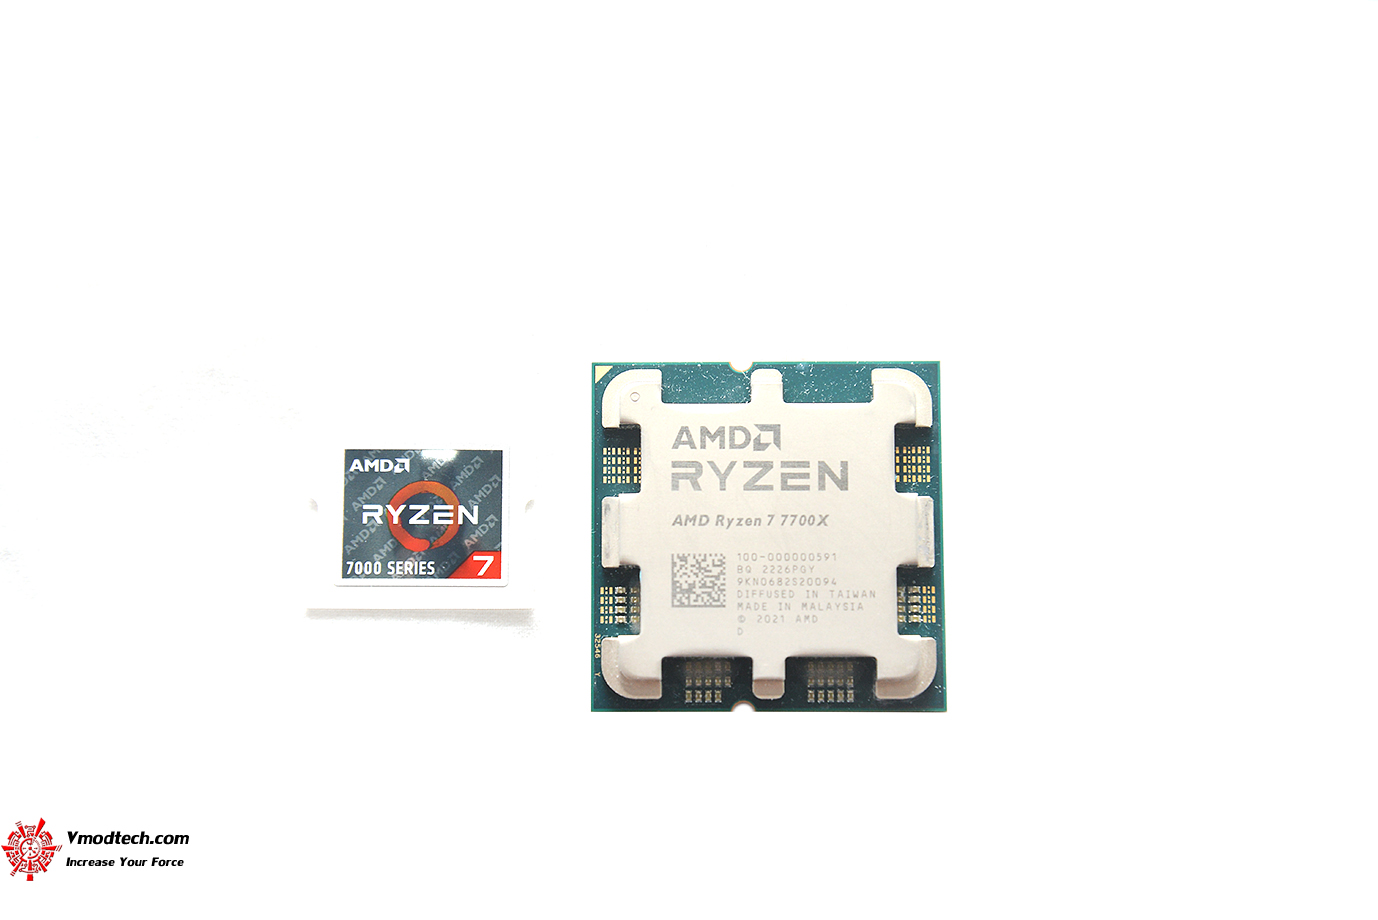 dsc 2022 AMD RYZEN 7 7700X PROCESSOR REVIEW